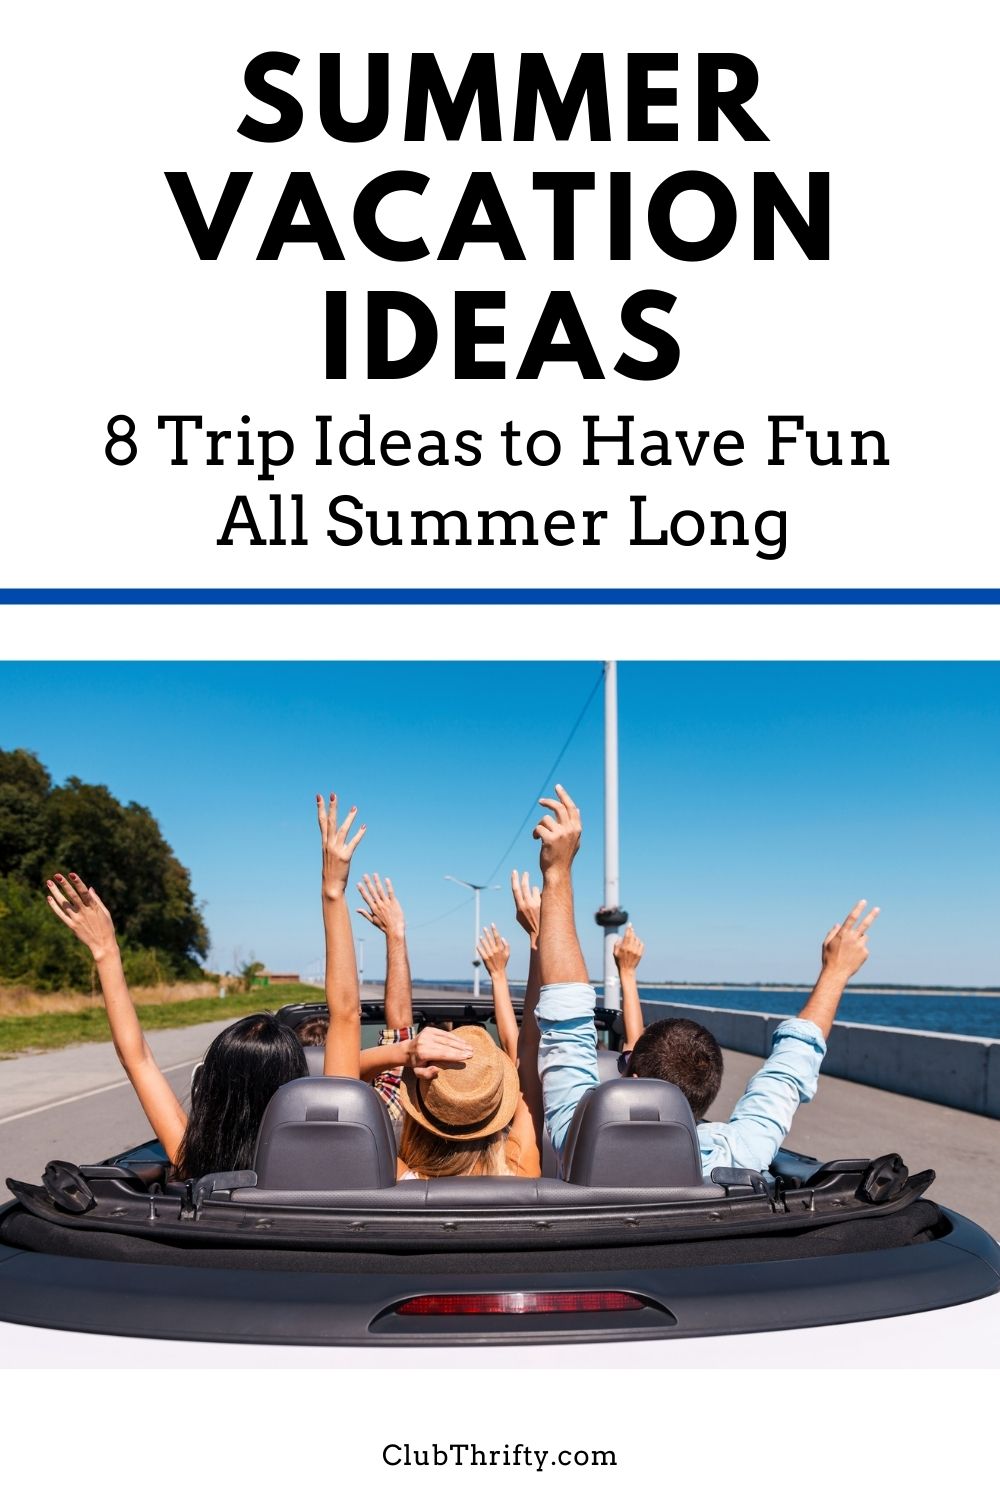 Summer vacation ideas